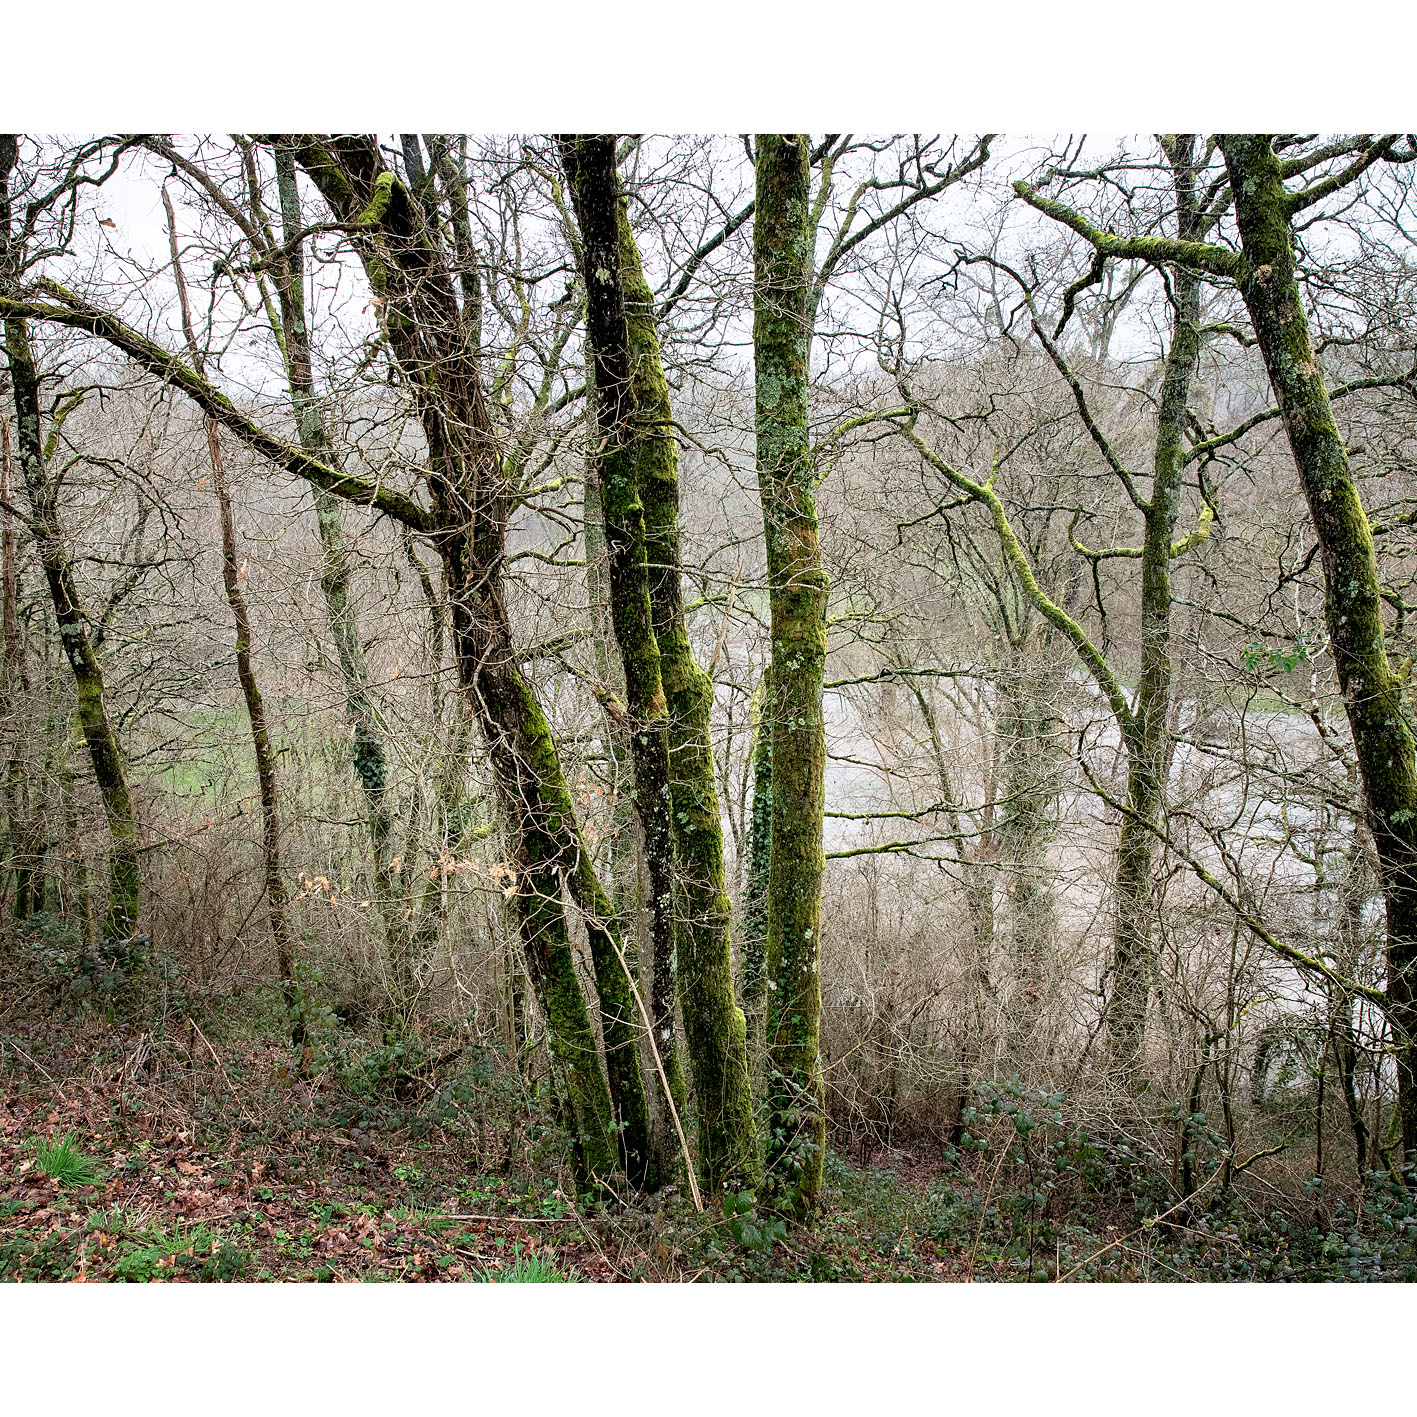 La forêt de Fabrice Hyber au coeur du bocage Vendéen. Le terrain est valonné, en contre bas coule la Doulaye. 